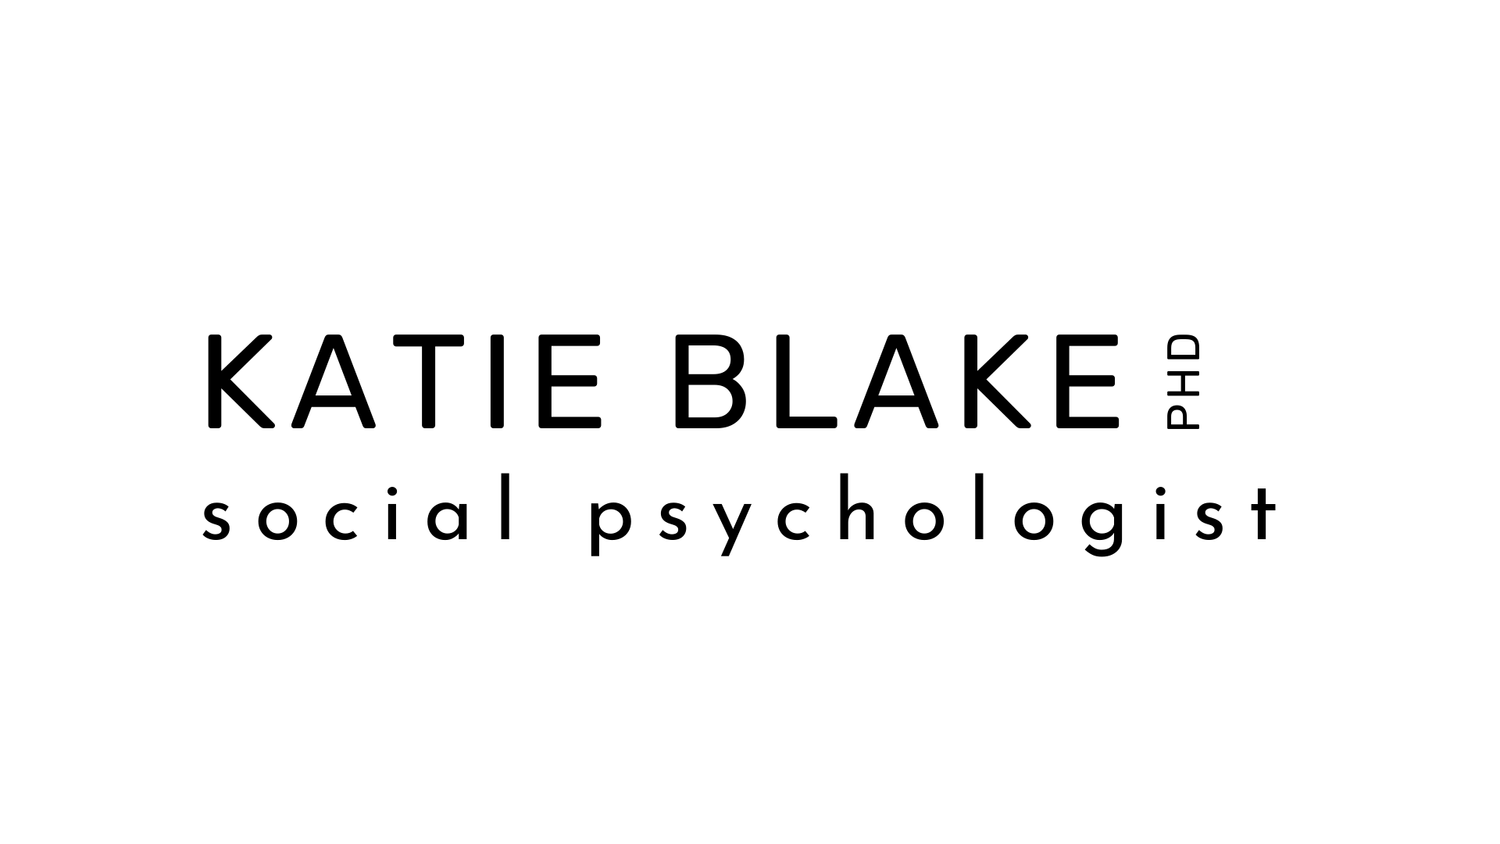 Dr. Katie Blake